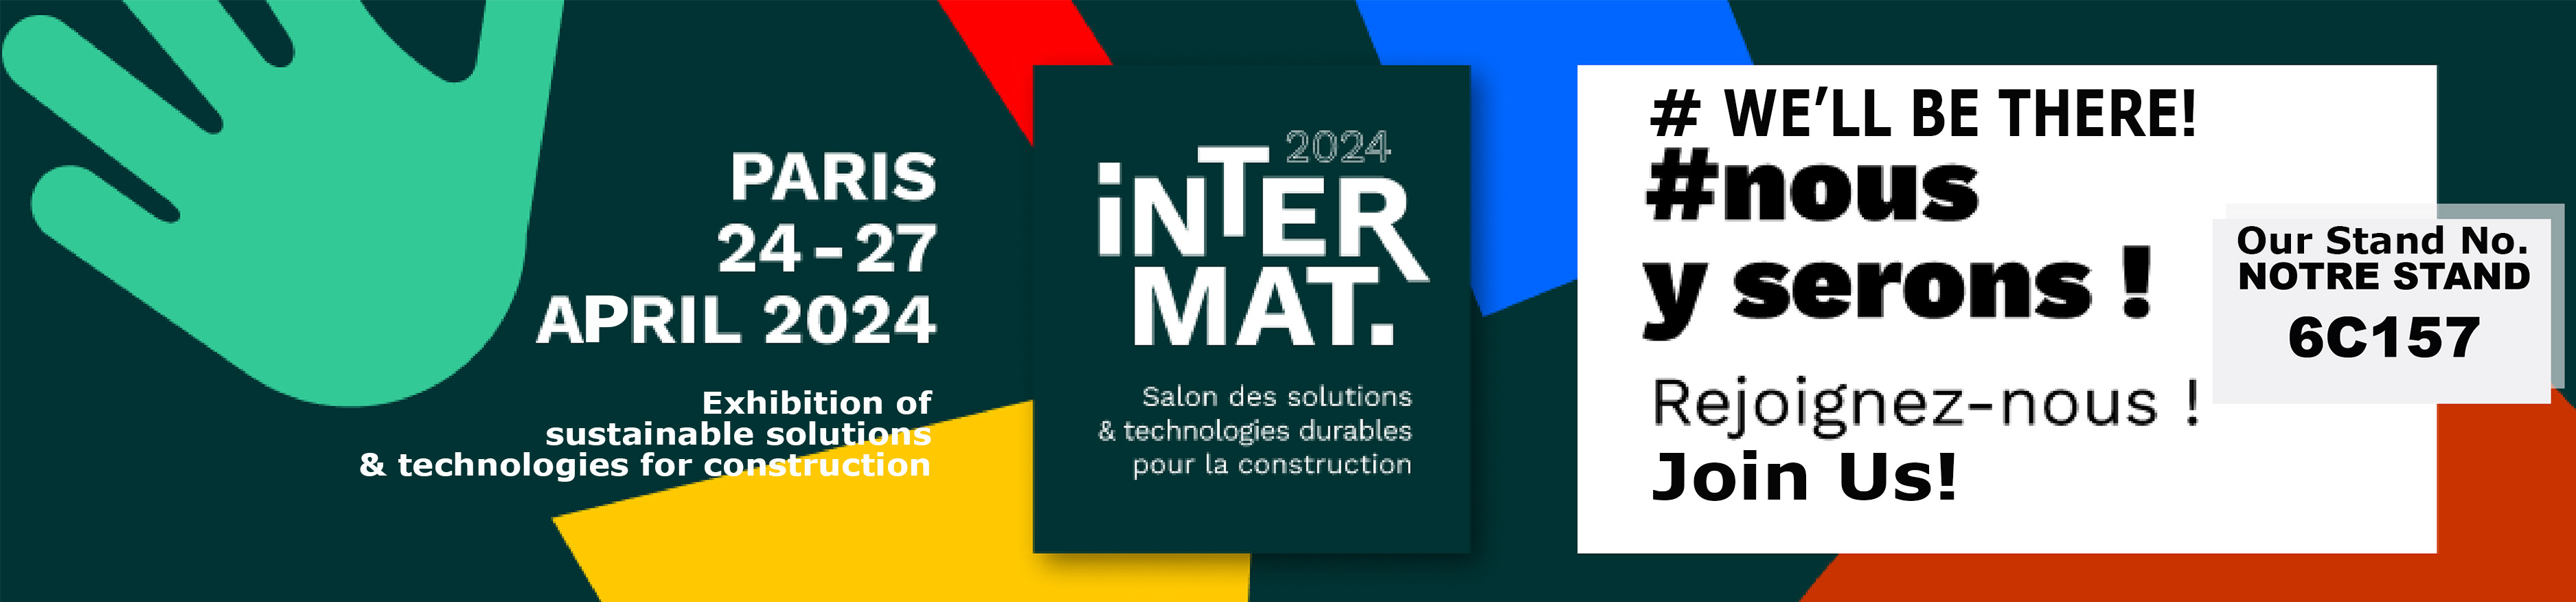 Intermat Paris 2024